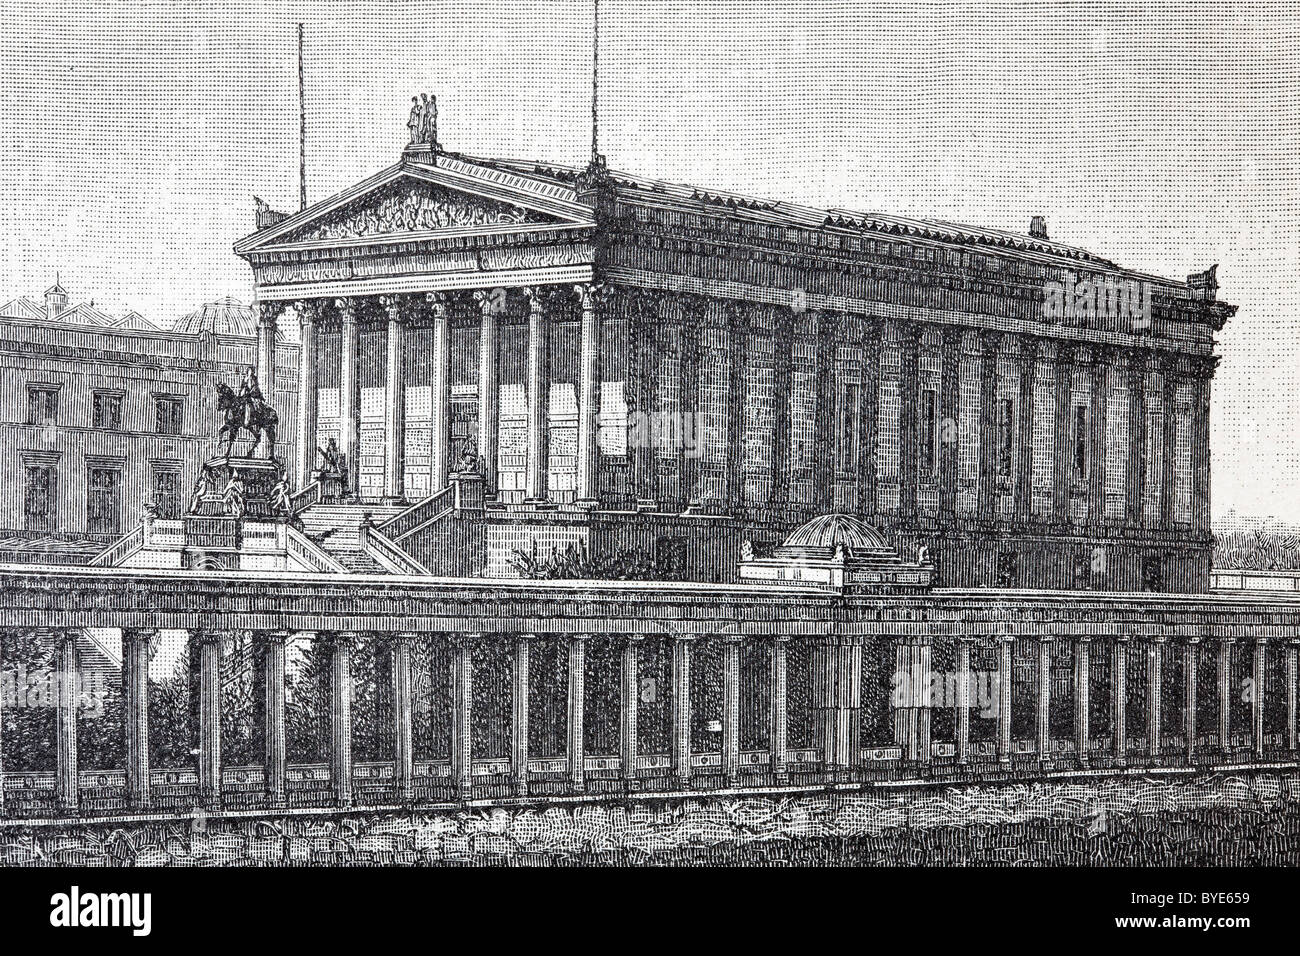 Alte Nationalgalerie, vecchia galleria nazionale, l'Isola dei Musei di Berlino, Germania, libro storico illustrazione del XIX secolo Foto Stock